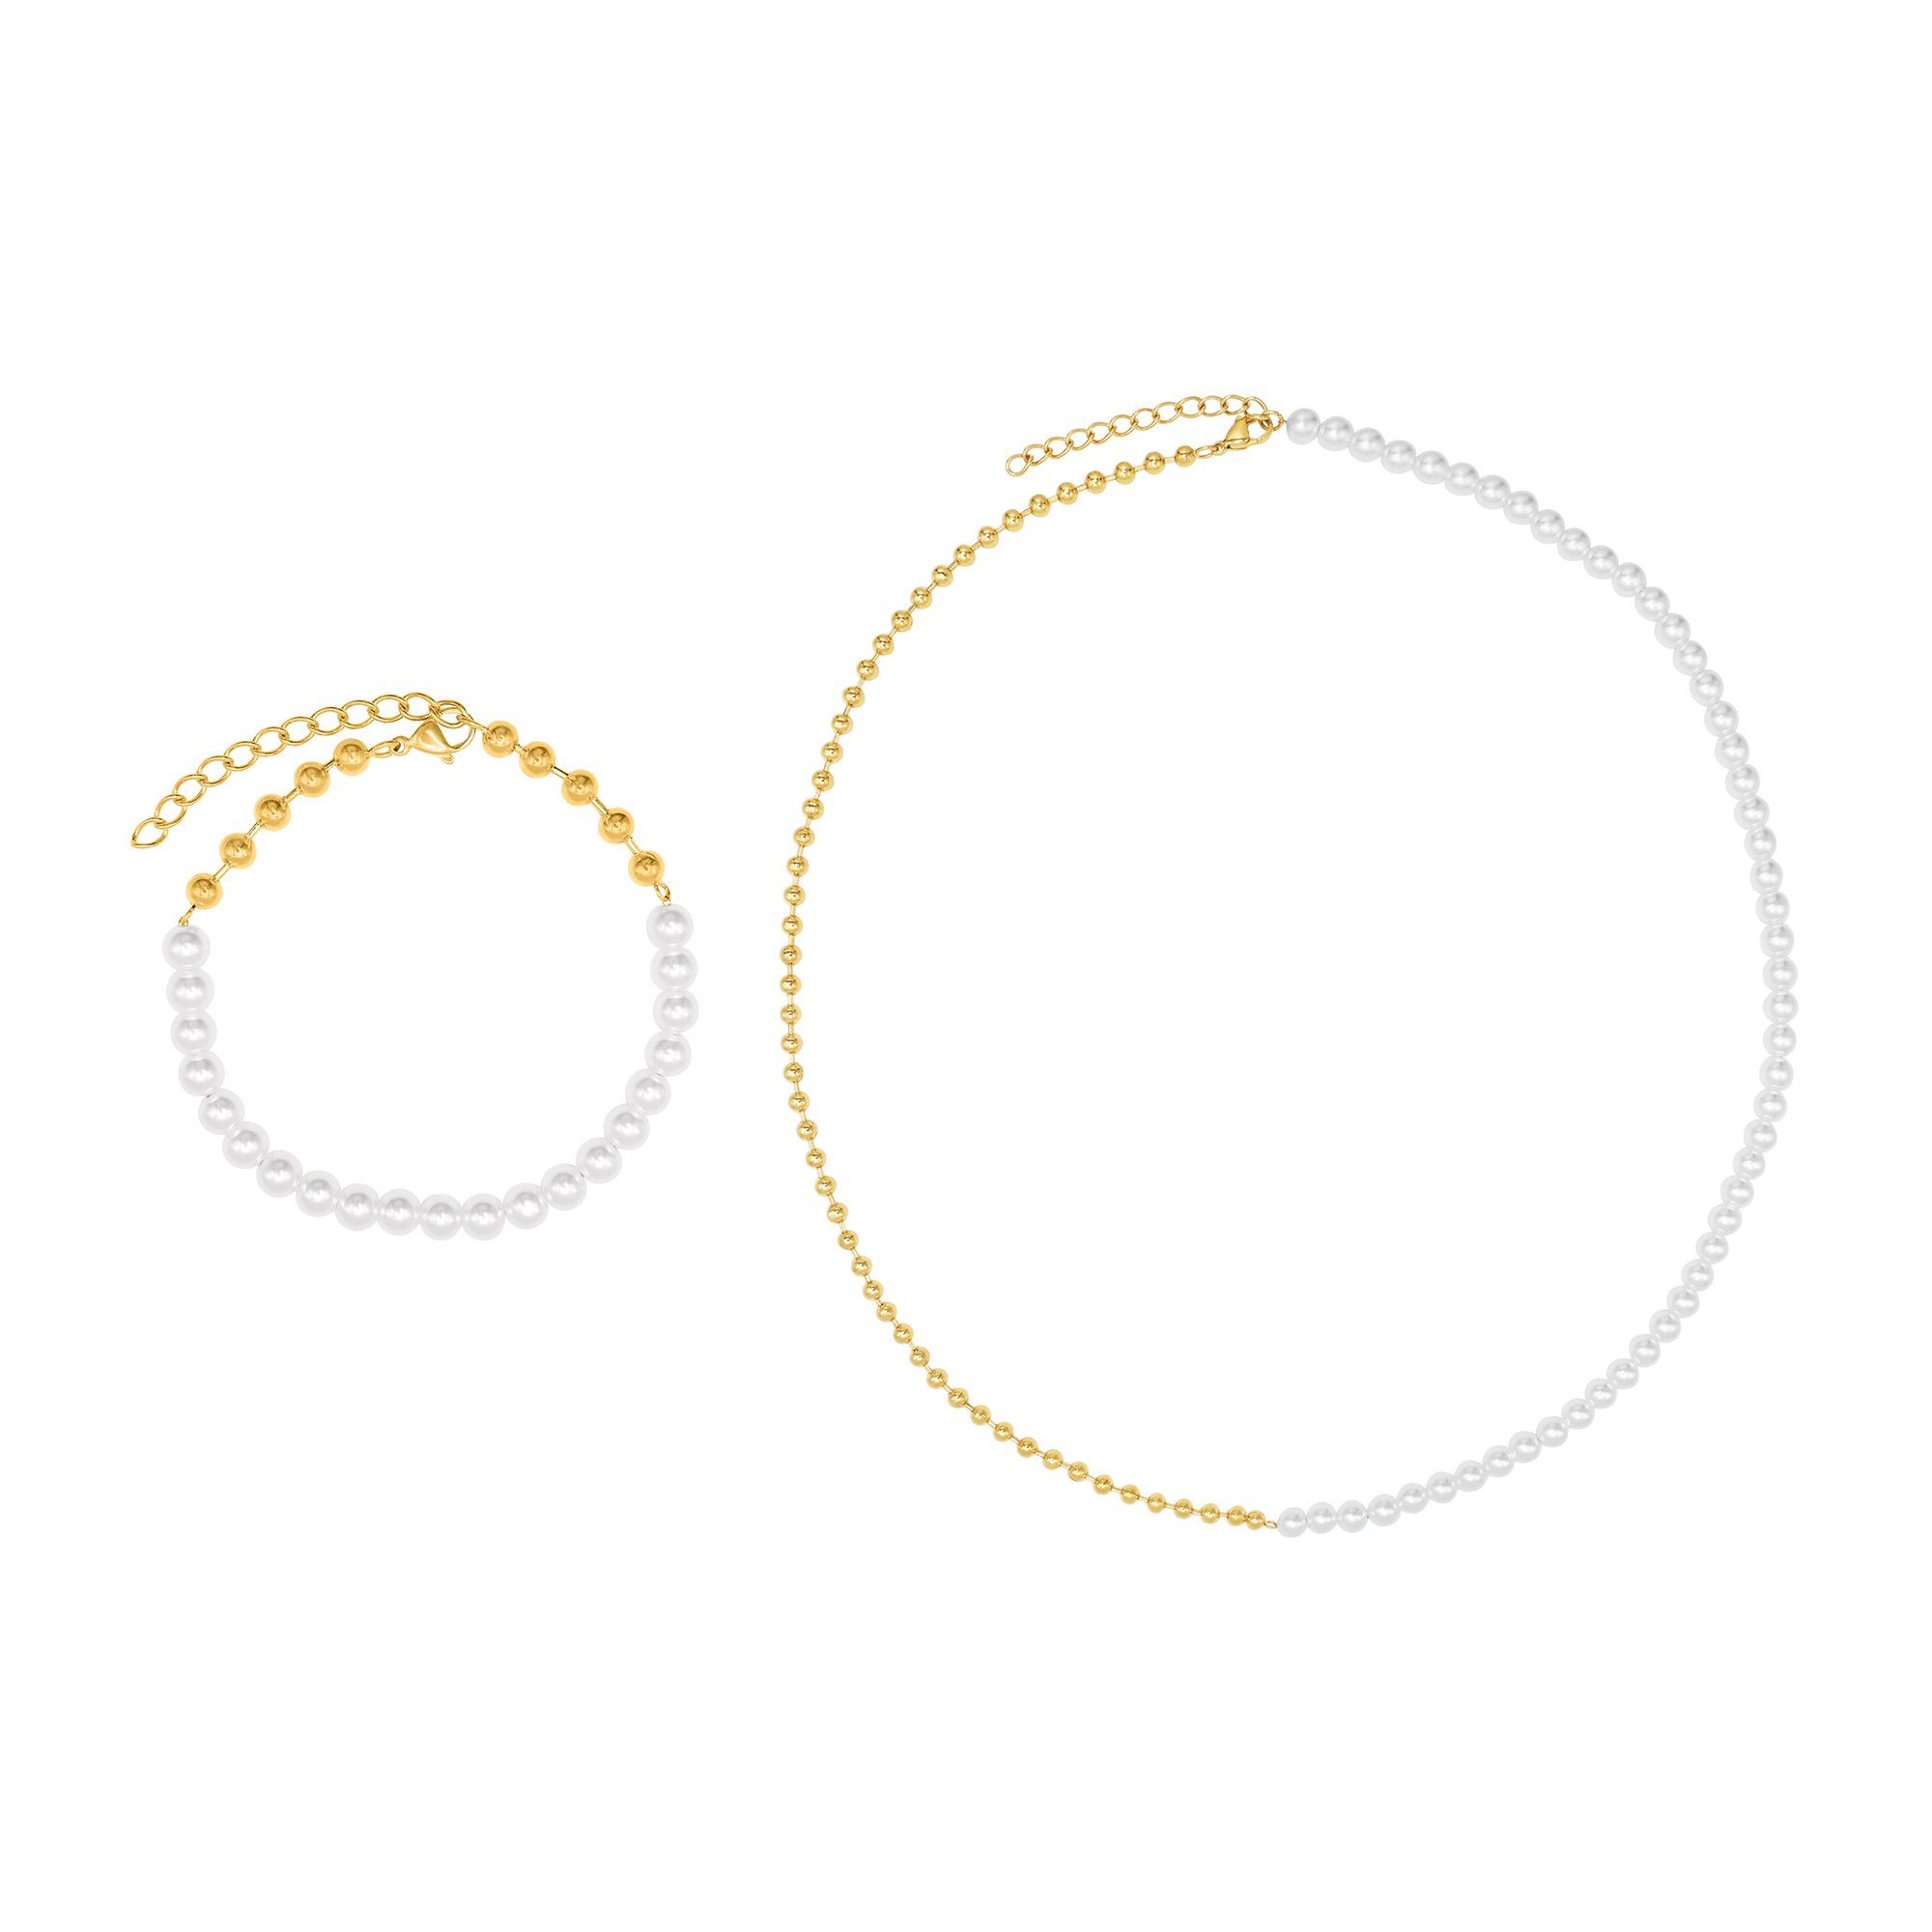 Heideman Collier Set Sara goldfarben (inkl. Geschenkverpackung), Geschenkset Damen mit Armband und Halskette